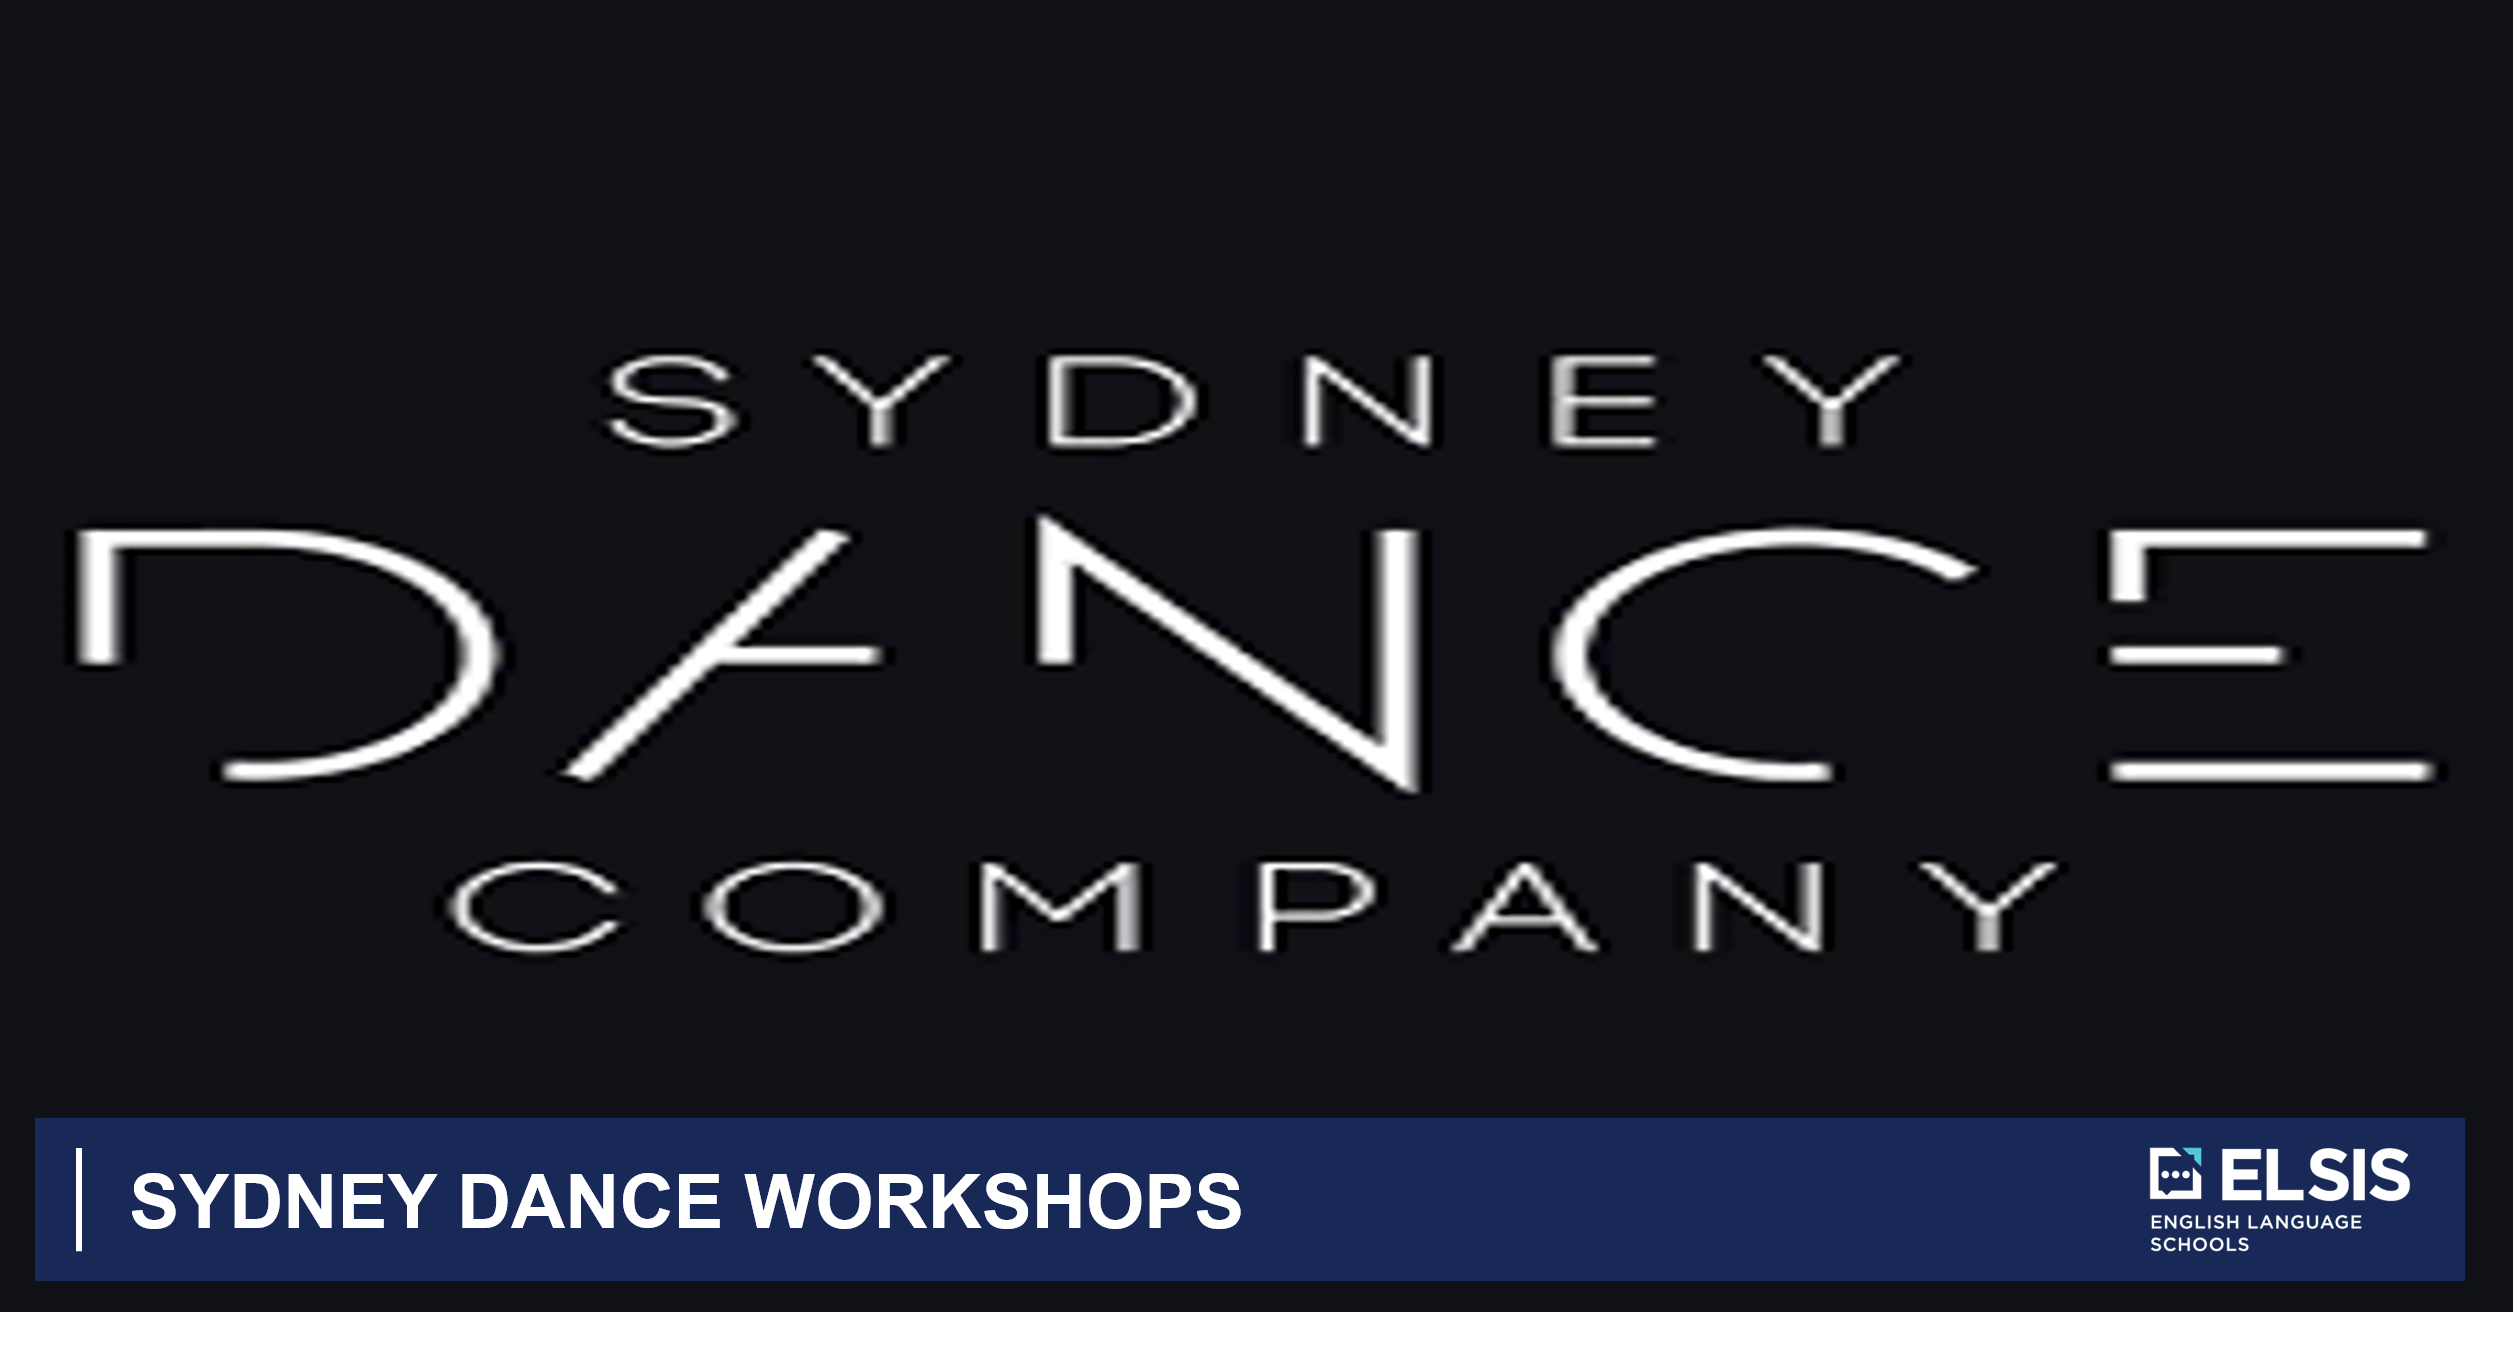 Sydney dance workshops